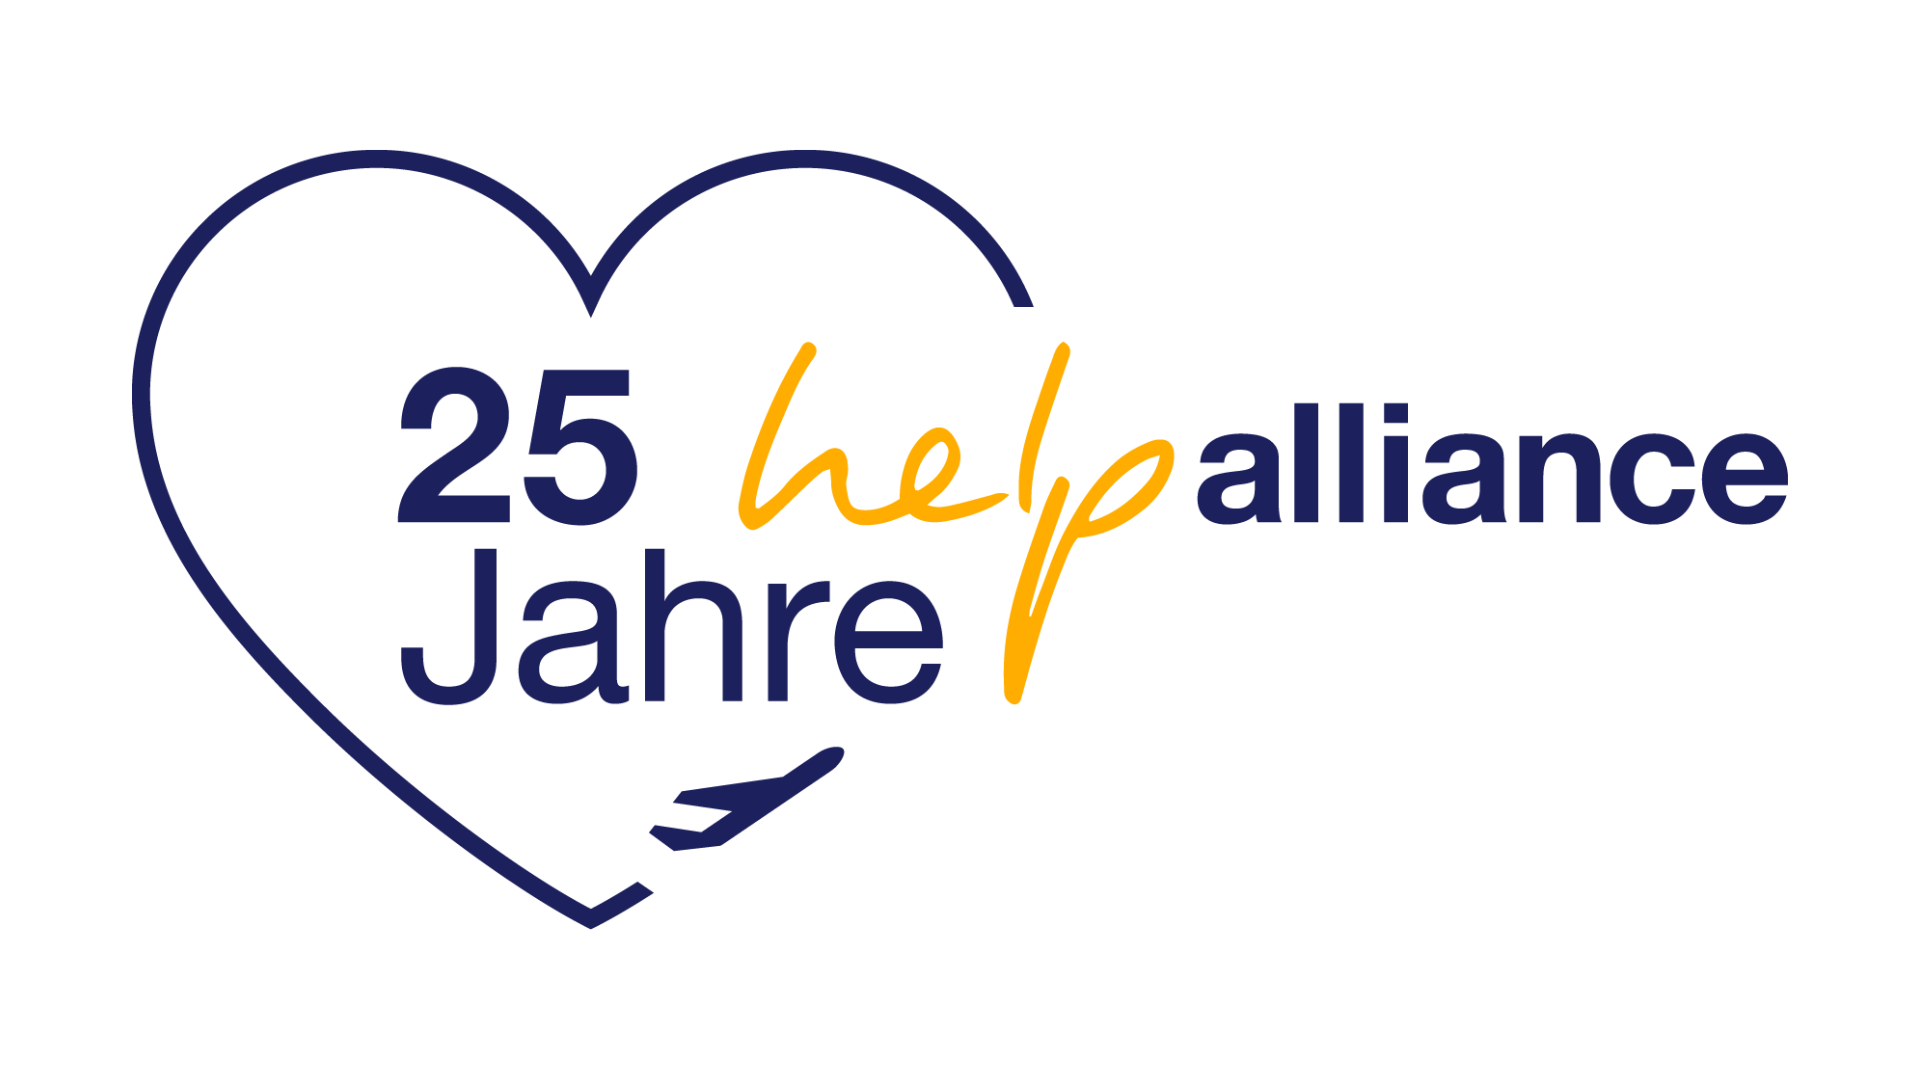 25 Jahre Help Alliance Logo mit Herz und Flugzeug-Symbol